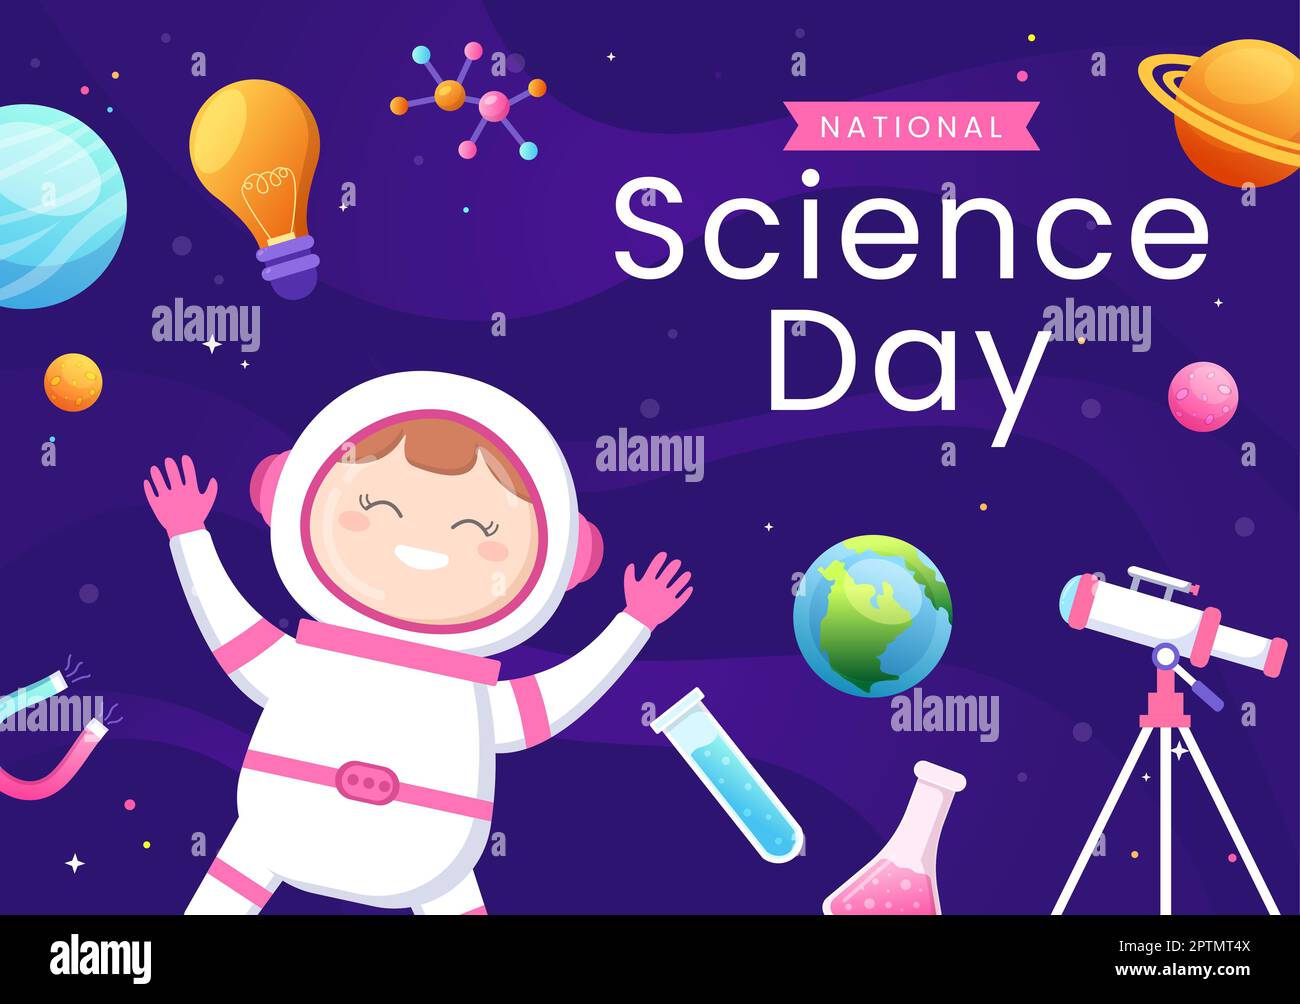 Día Nacional de la Ciencia 28 de febrero Relacionado con Líquido Químico, Científico e Investigación con Niños en Cartoon Plano Plantillas Dibujadas a mano Ilustración Foto de stock